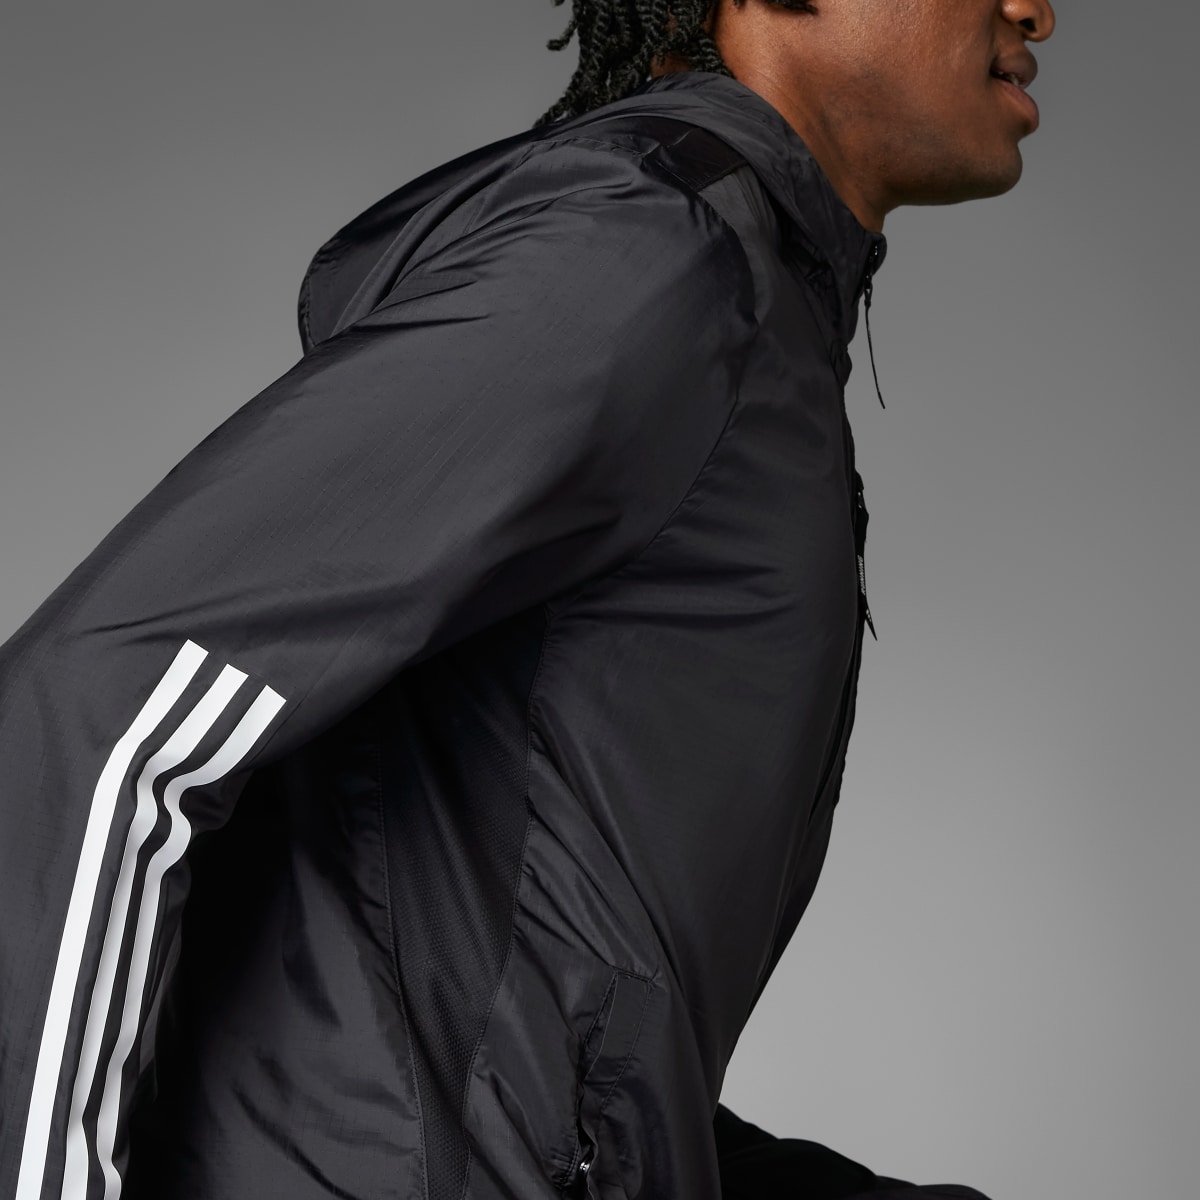 Adidas Own the Run 3-Stripes Jacket. 4